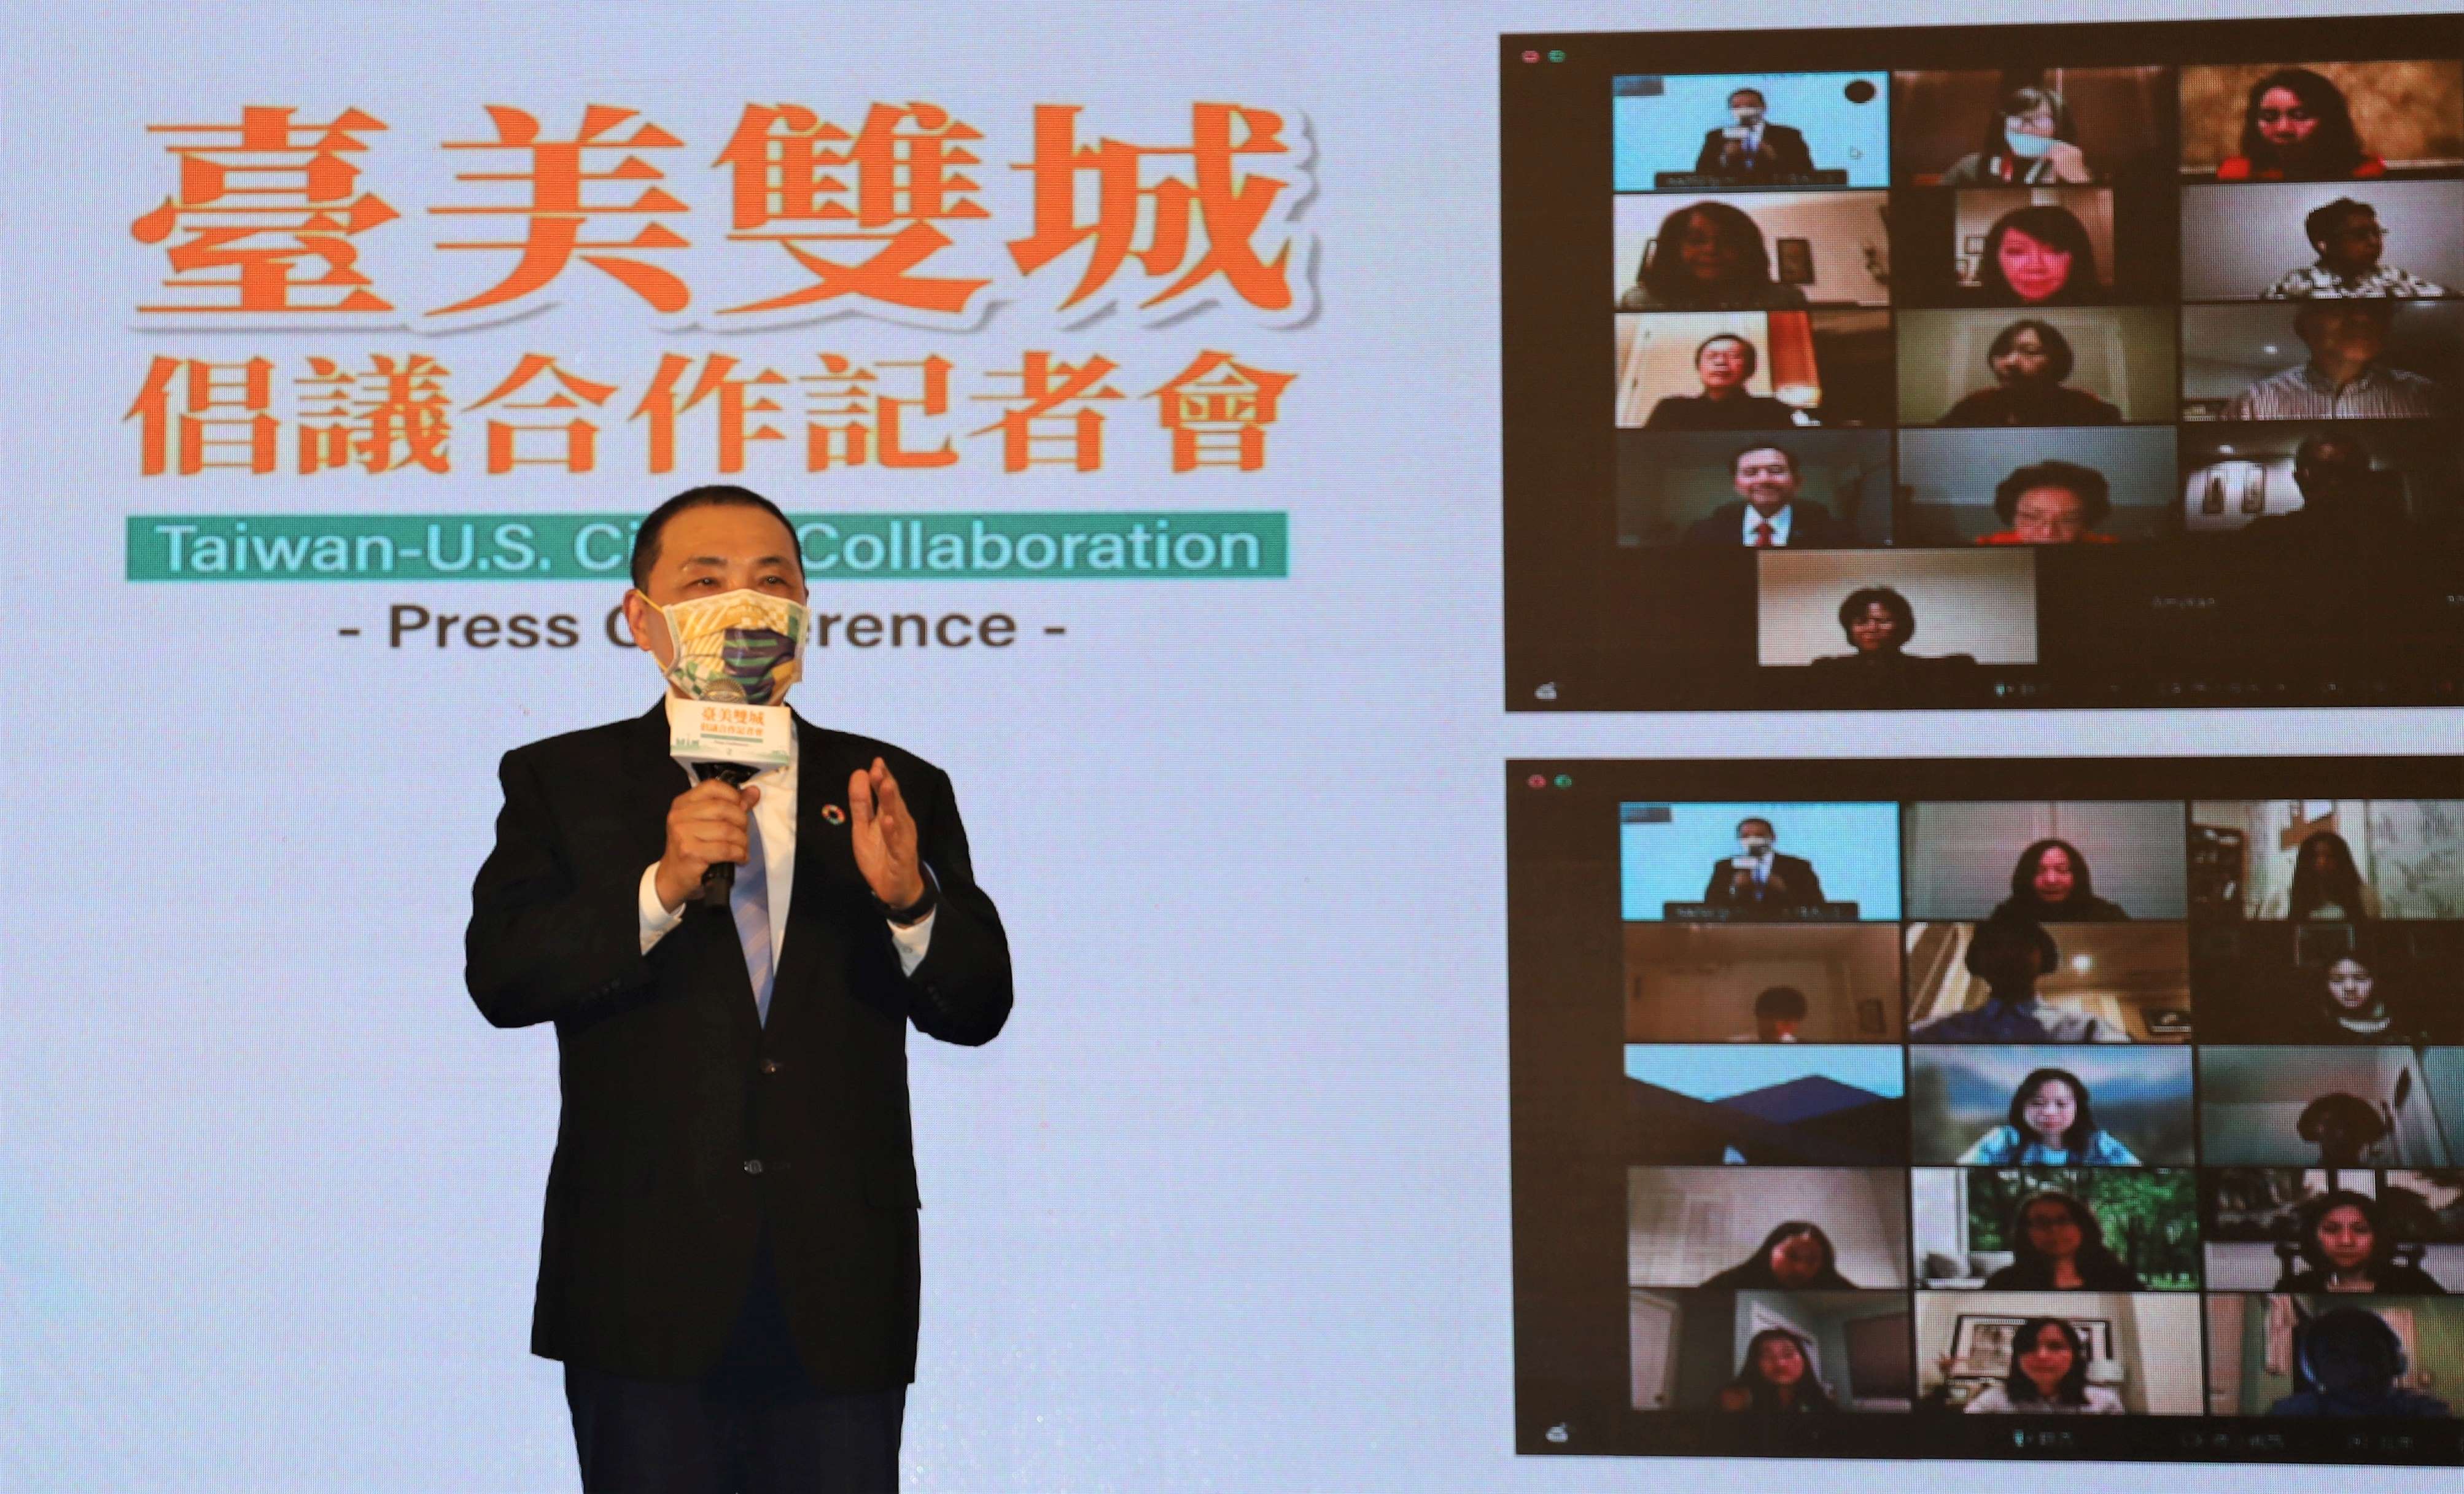 侯友宜市長表示期待與矽谷一起培育國際人才.jpg